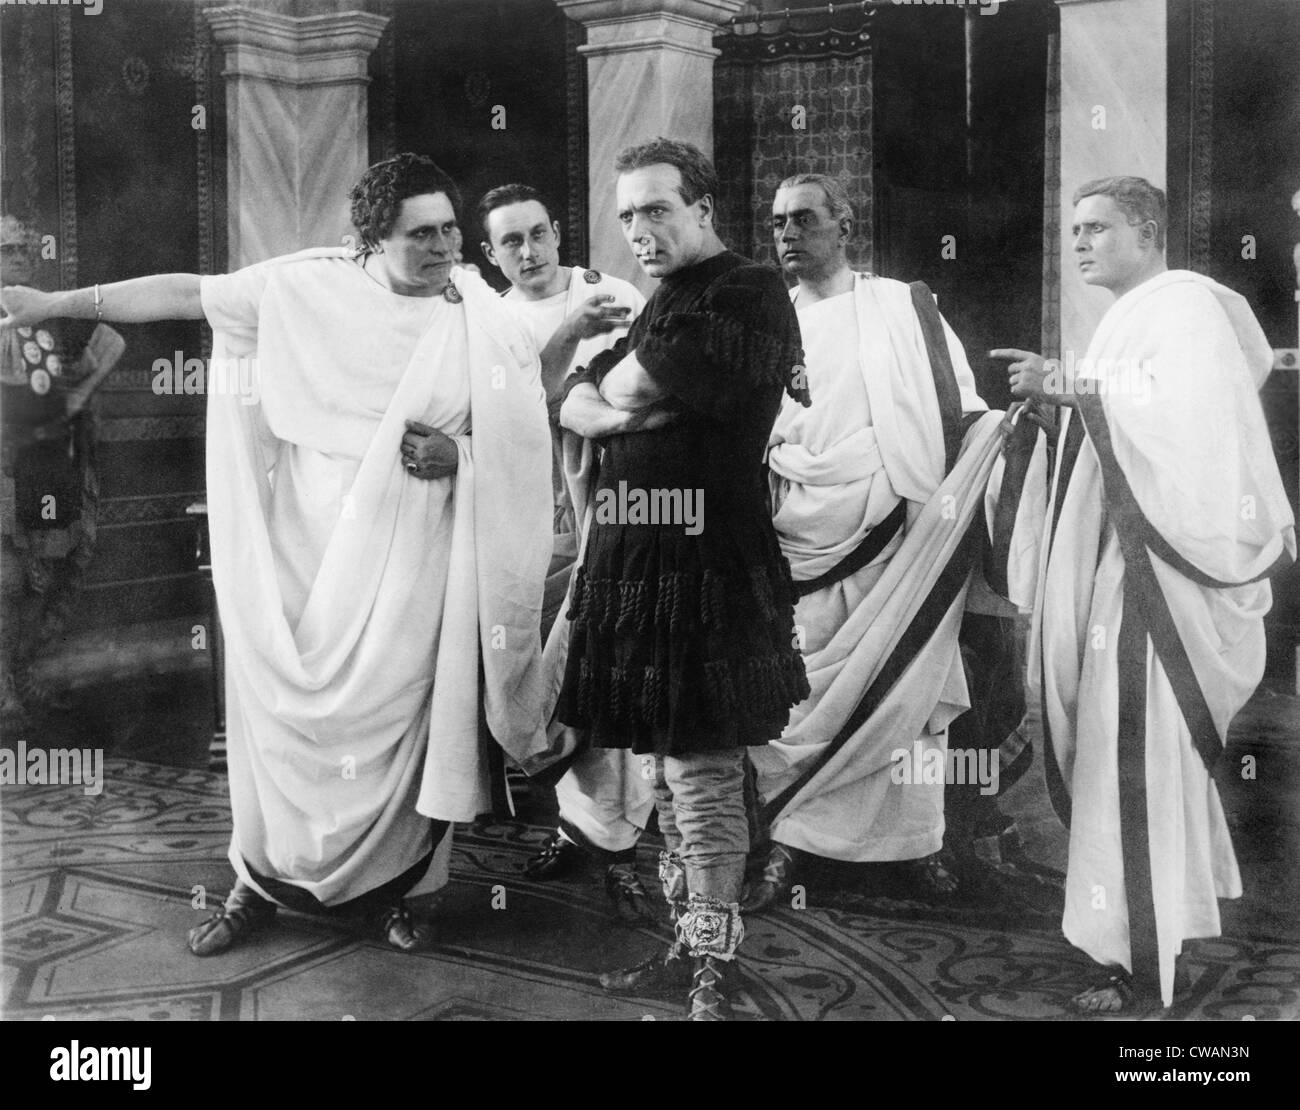 Amleto (Anthony) Novelli (1885-1924), italienischer Schauspieler in einem Film noch von JULIUS CAESAR, 1914. Szene zeigt Novelli, als Caesar, Stockfoto